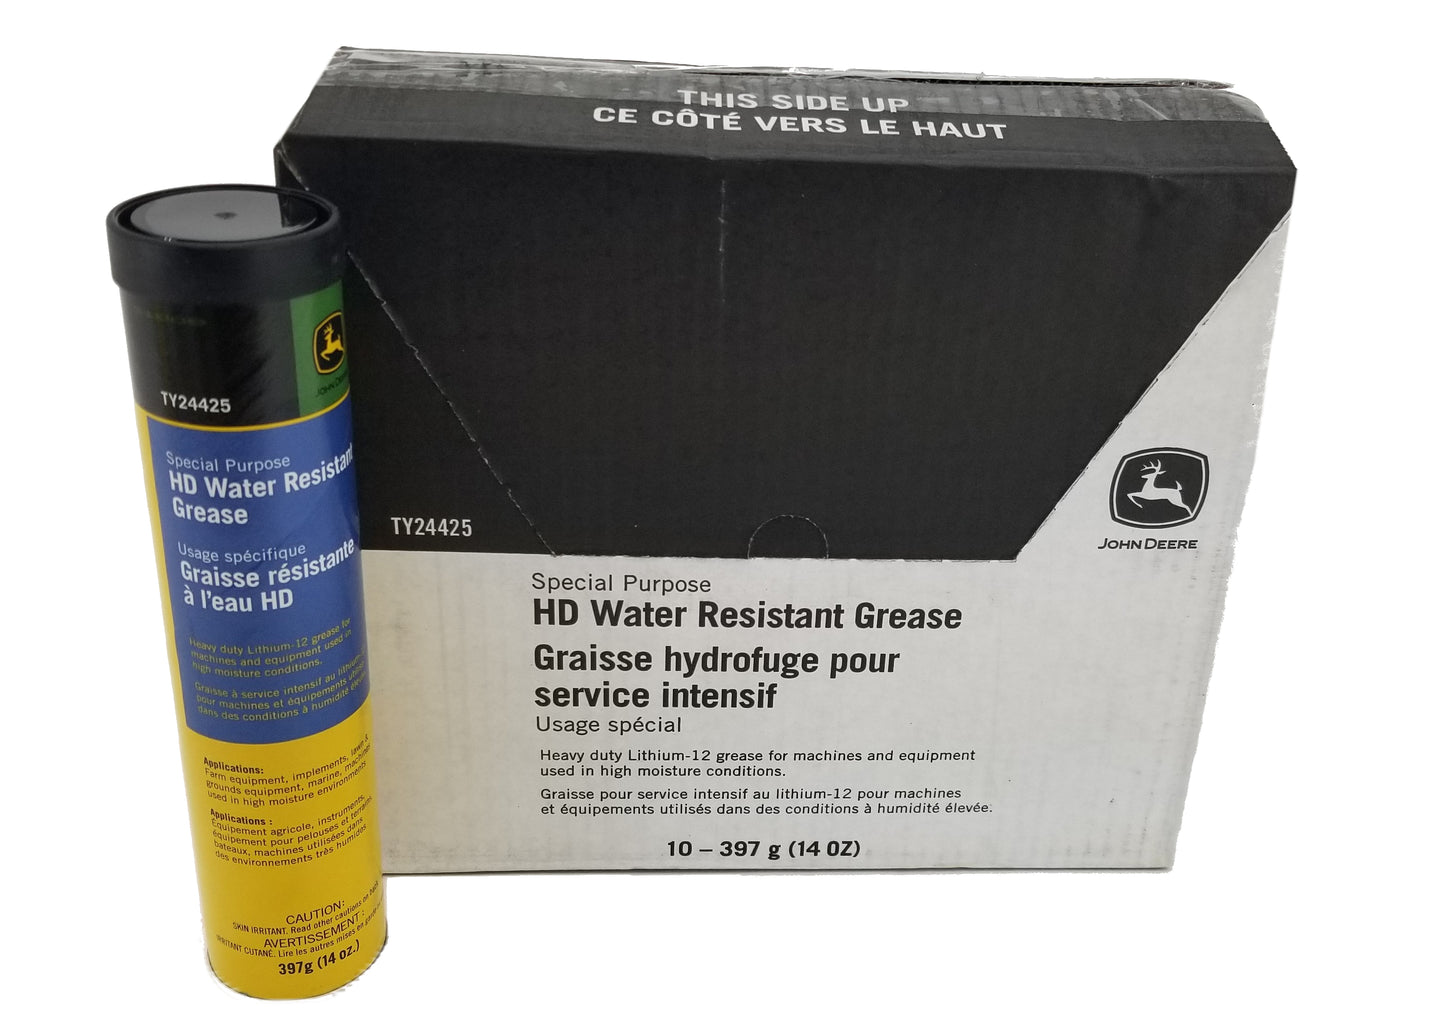 John Deere Special Purpose HD Water Resistant Grease (Pack of 10) - TY24425,10